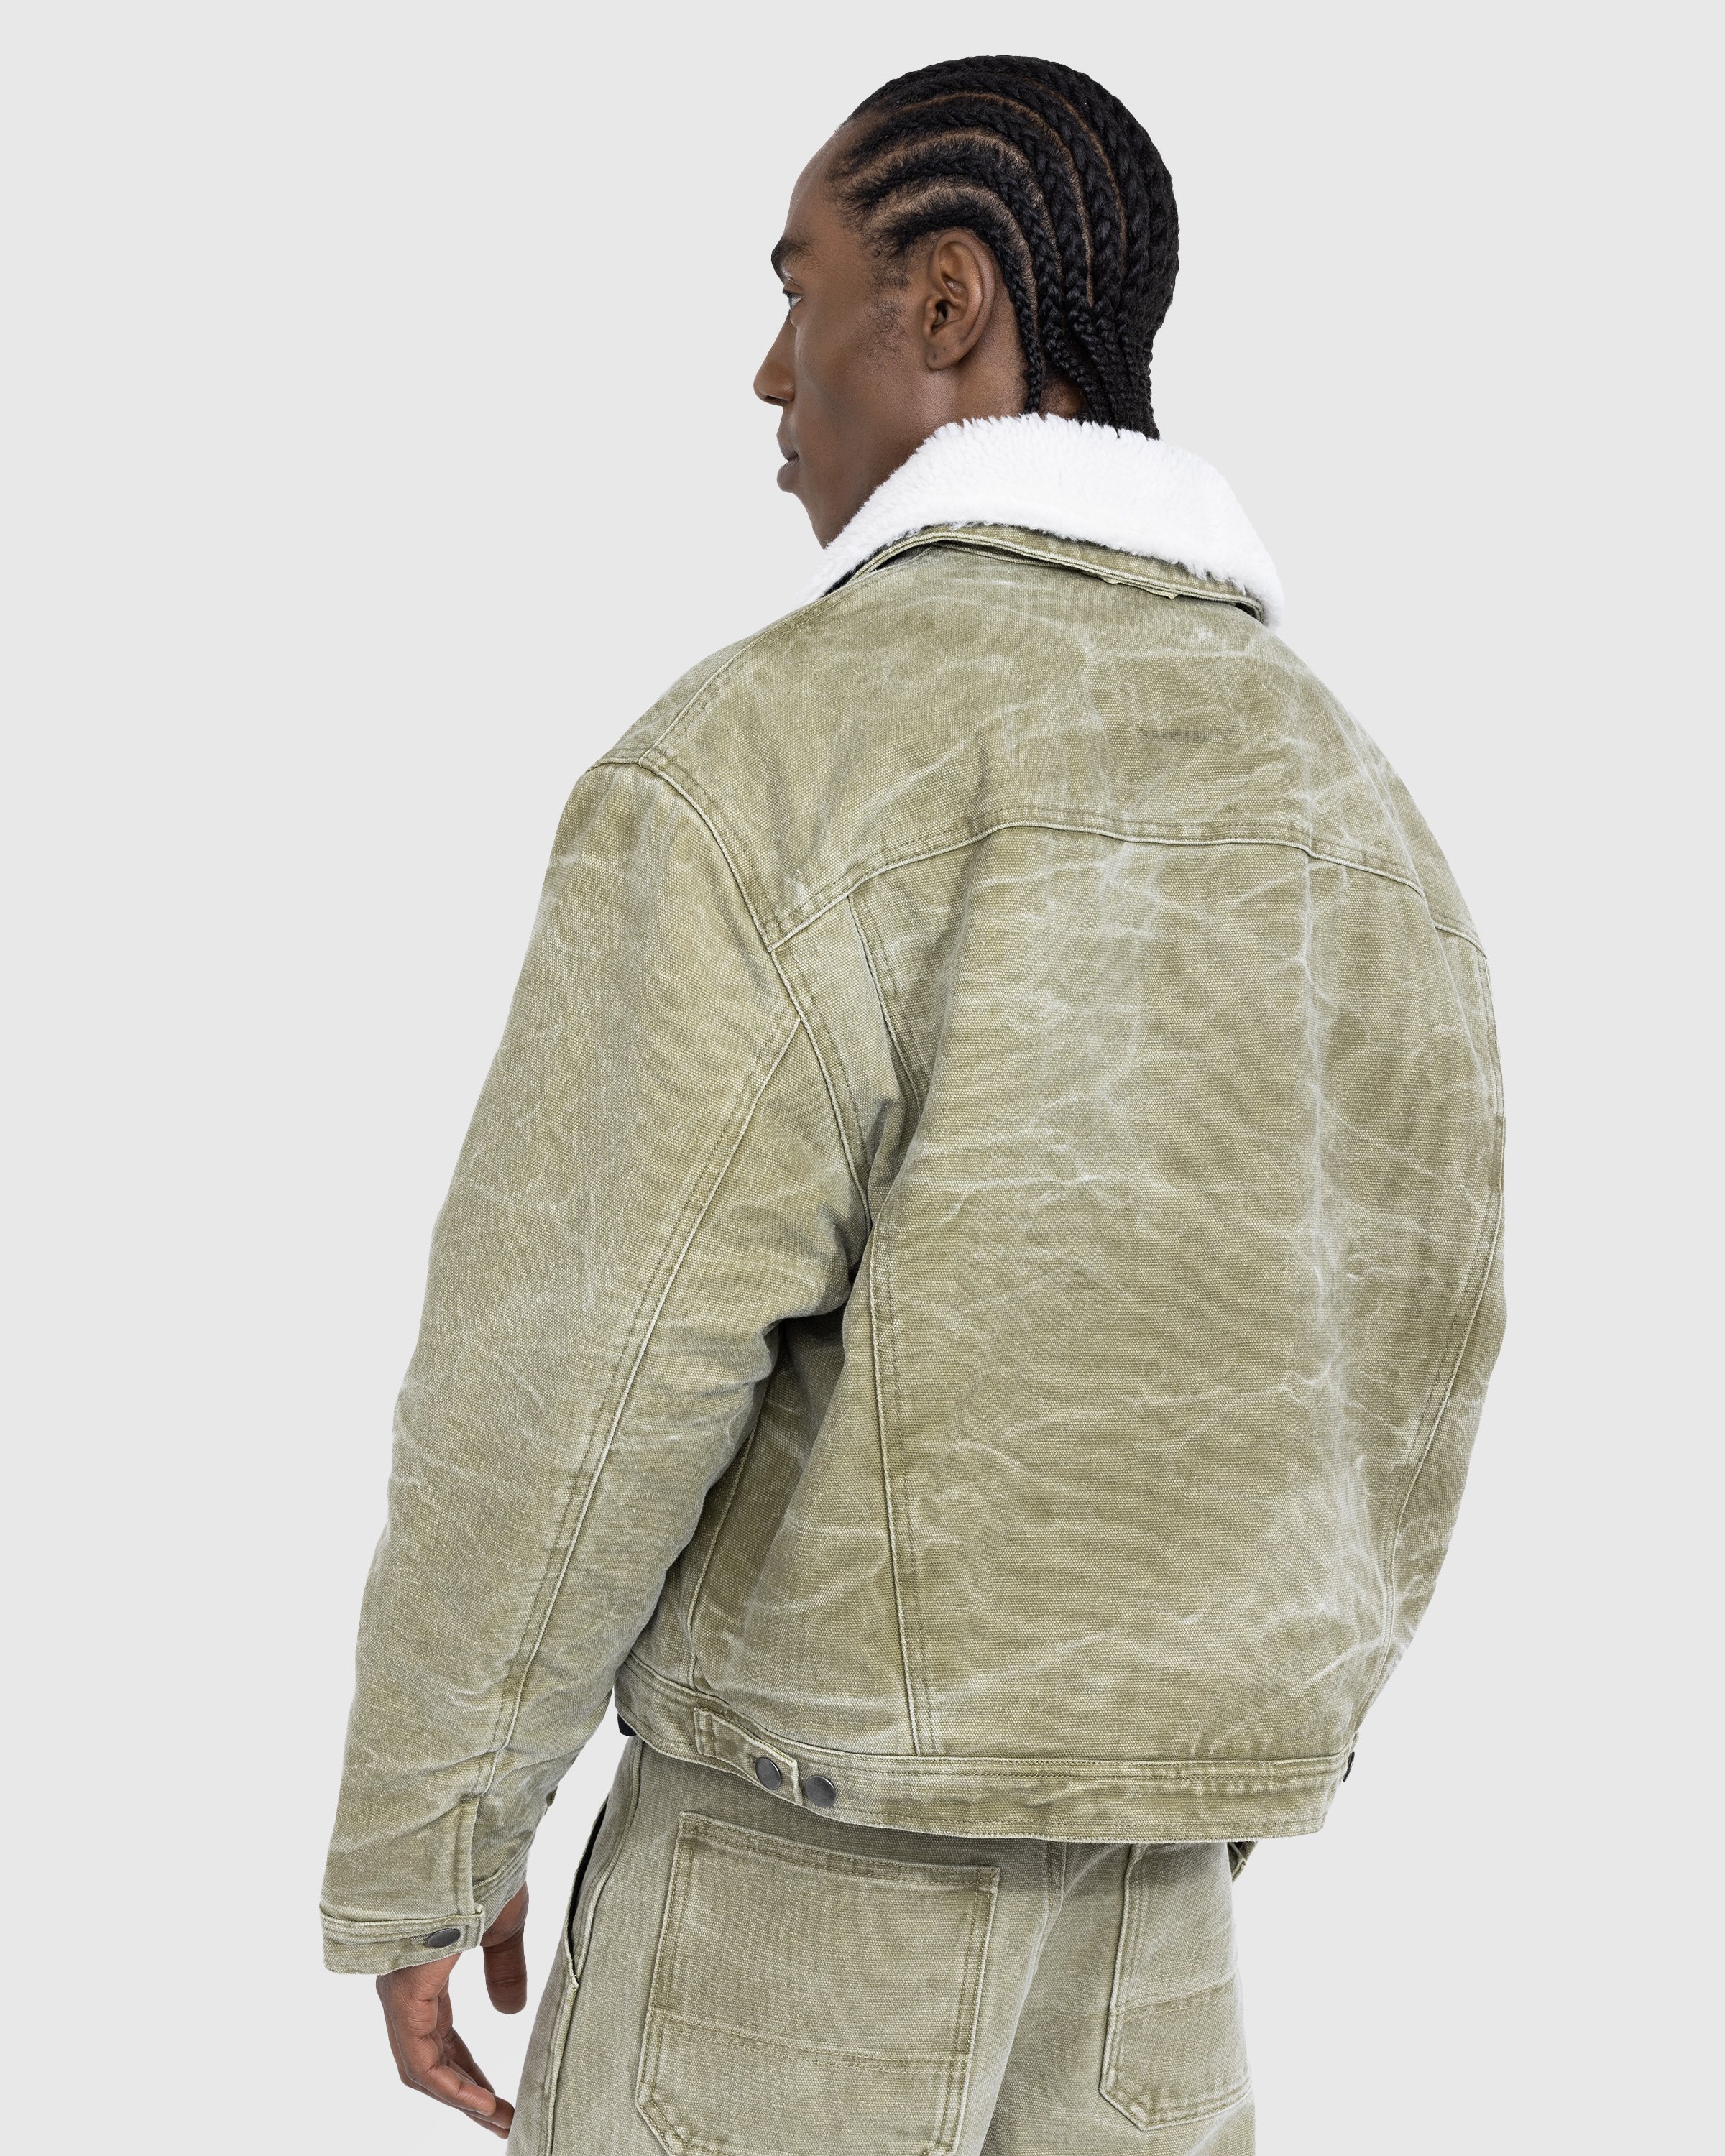 Acne Studios - Canvas Padded Jacket Khaki Beige - Clothing - Green - Image 3